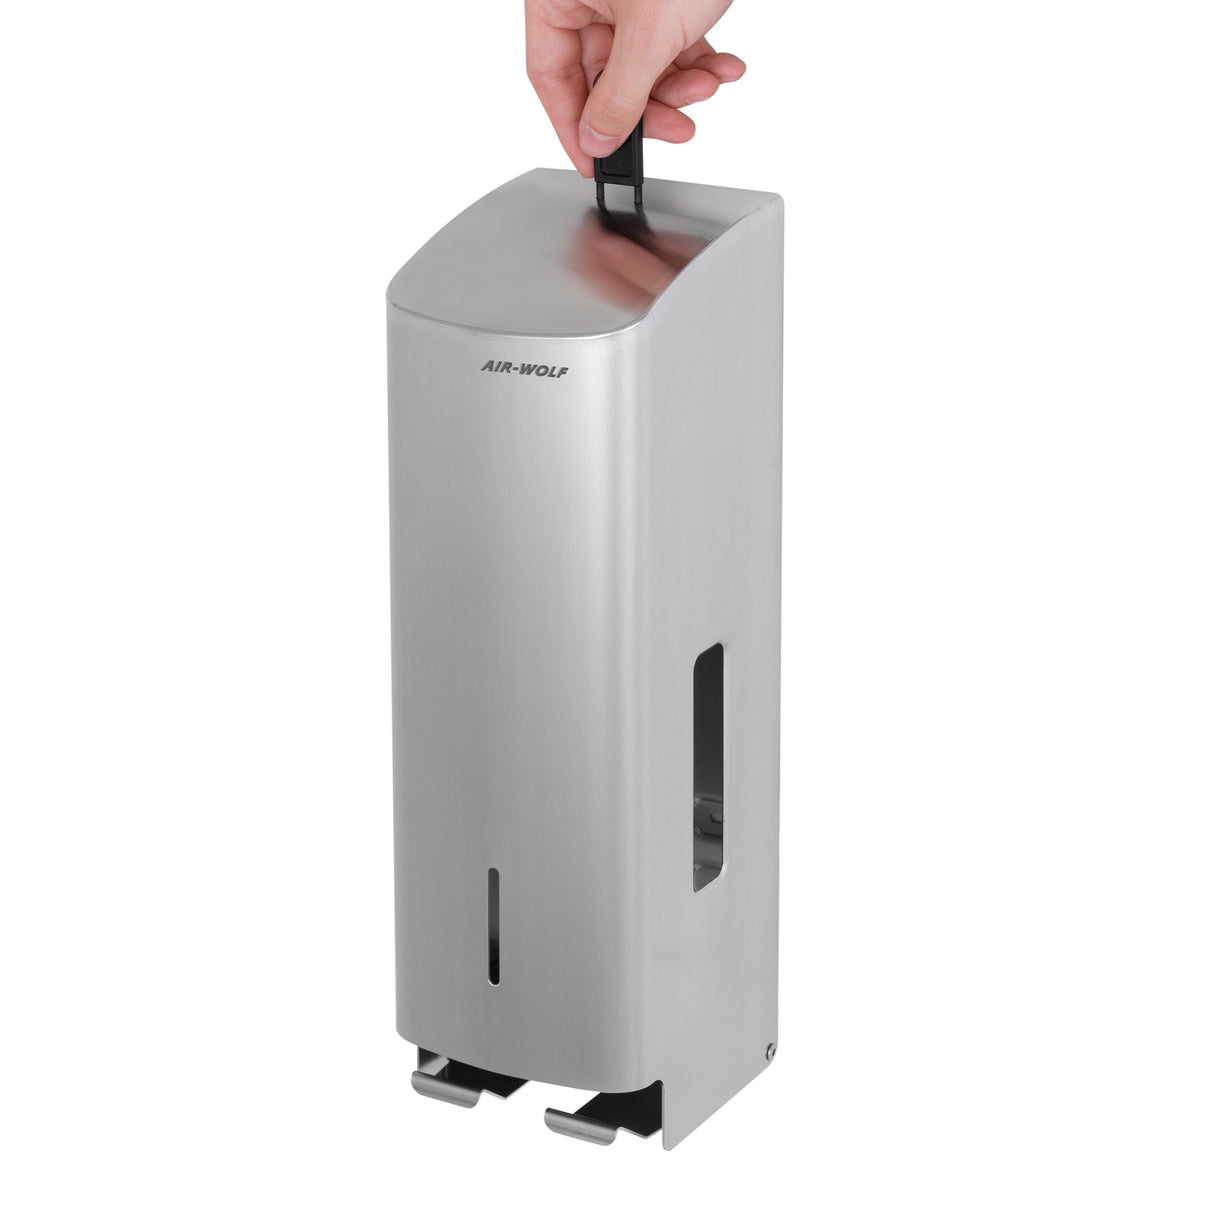 AIR-WOLF - Toiletpapir dispenser - til 3 husholdningsruller